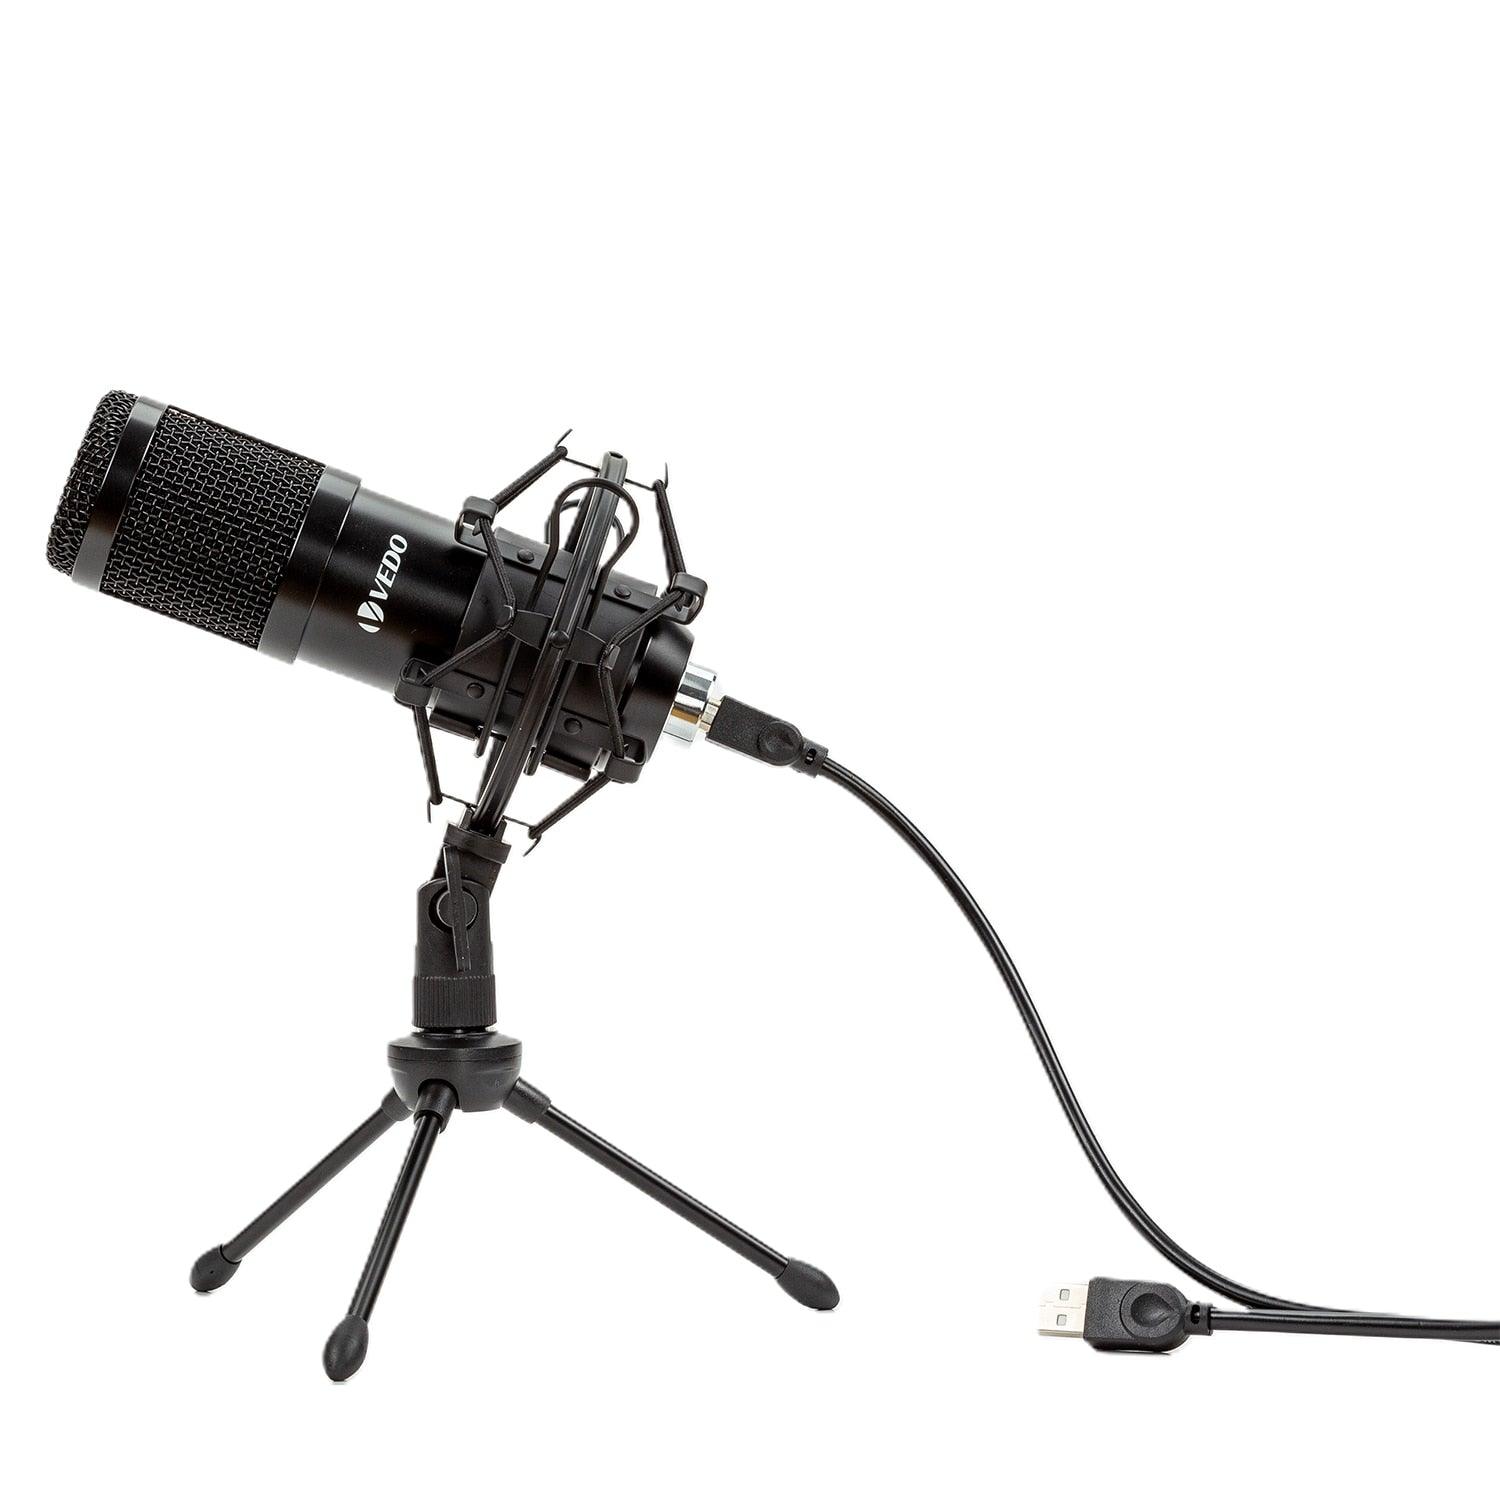 Micorfone de Alta qualidade usb condensador gravação para computador portátil karaoke jogos streaming estúdio de gravação vídeo youtube